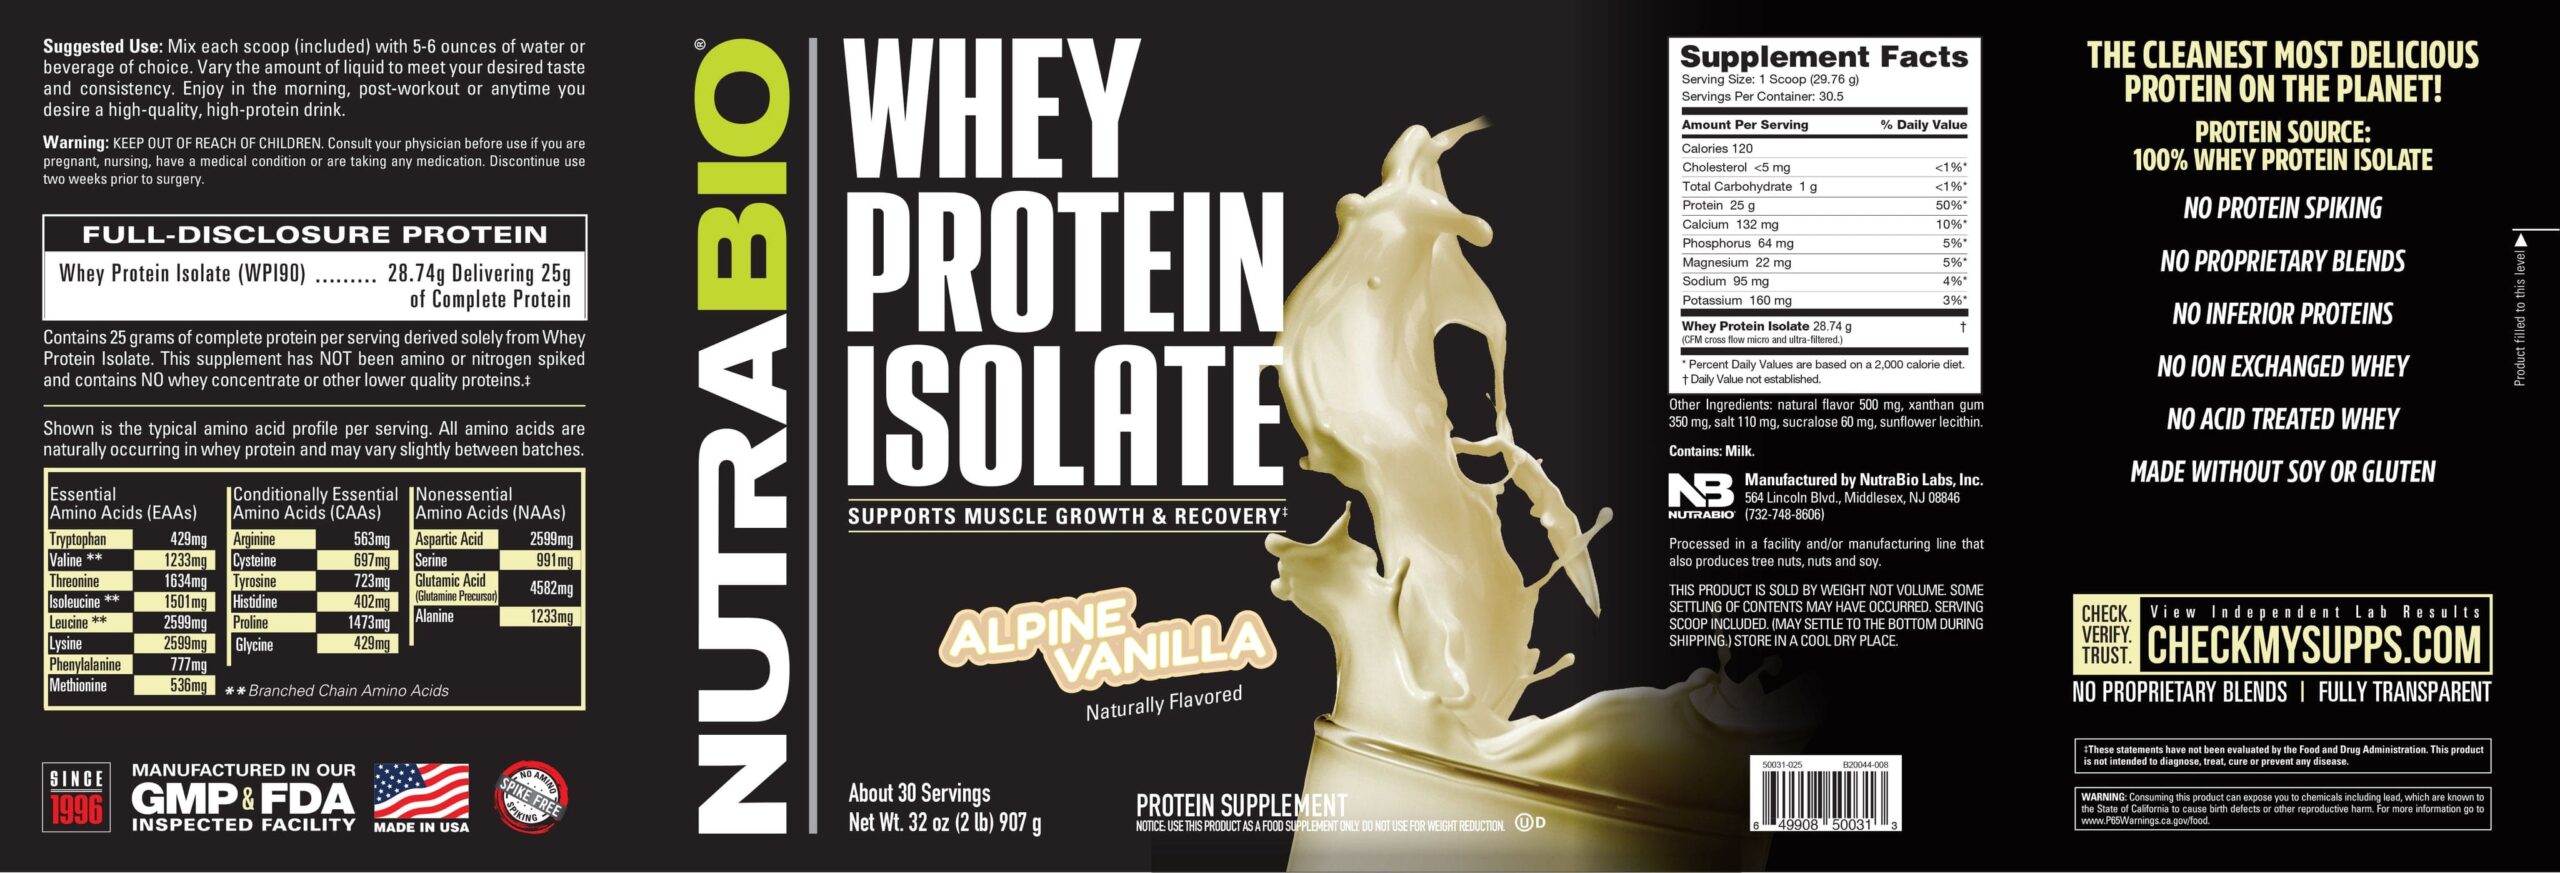 Whey-Protein-Alpine-Vanilla-label-en-scaled-1.jpg